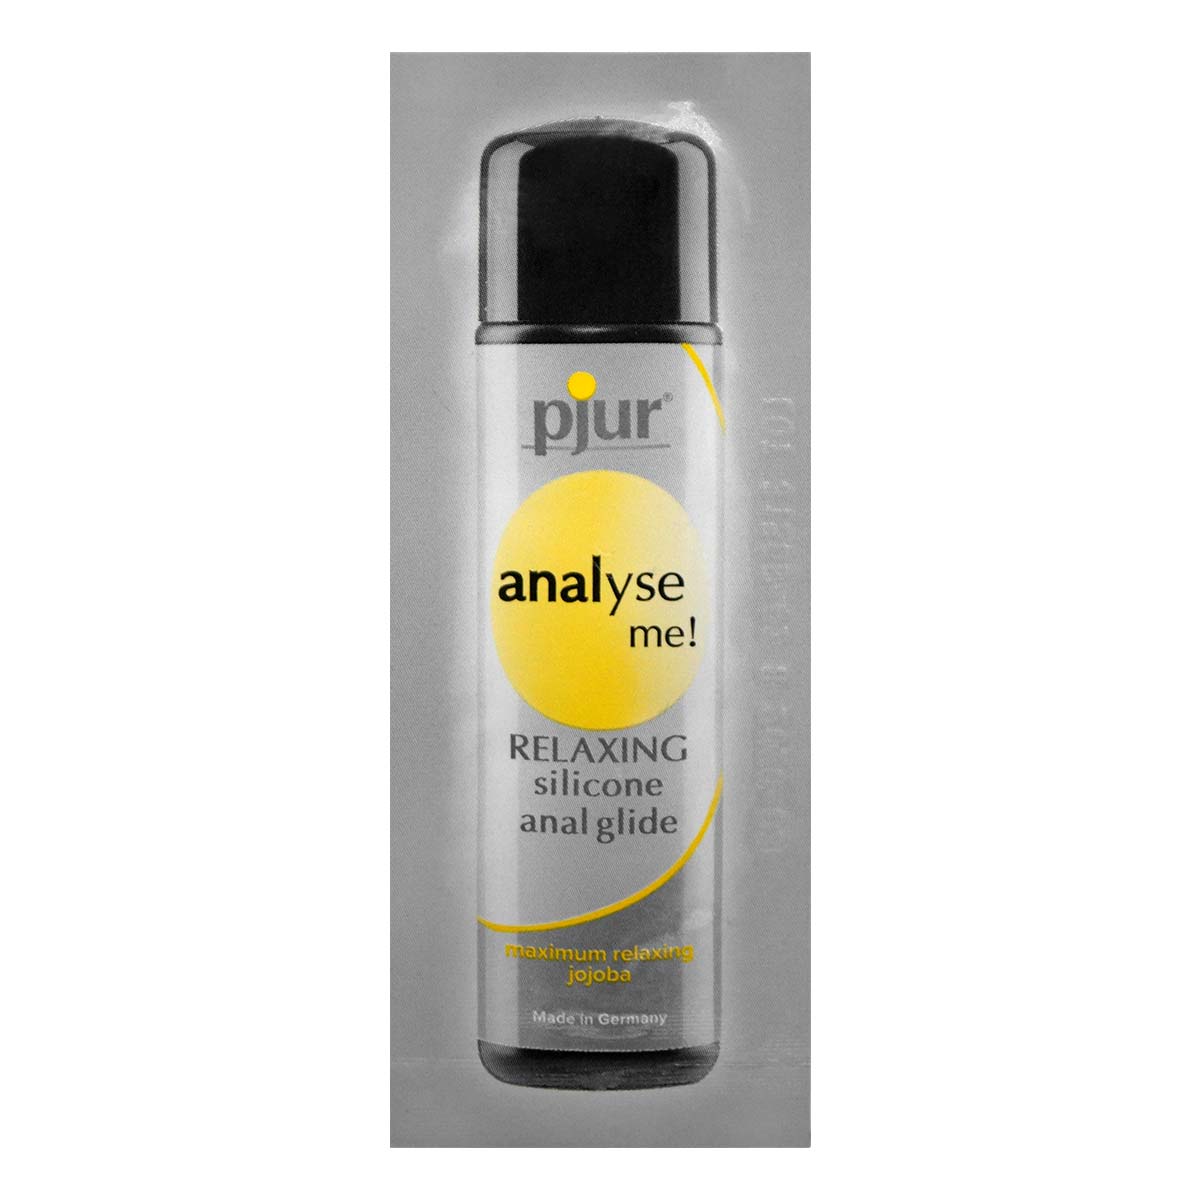 pjur ピュア アナライズミー リラクシング アナル 潤滑剤 1.5ml シリコーン潤滑ゼリー-p_2